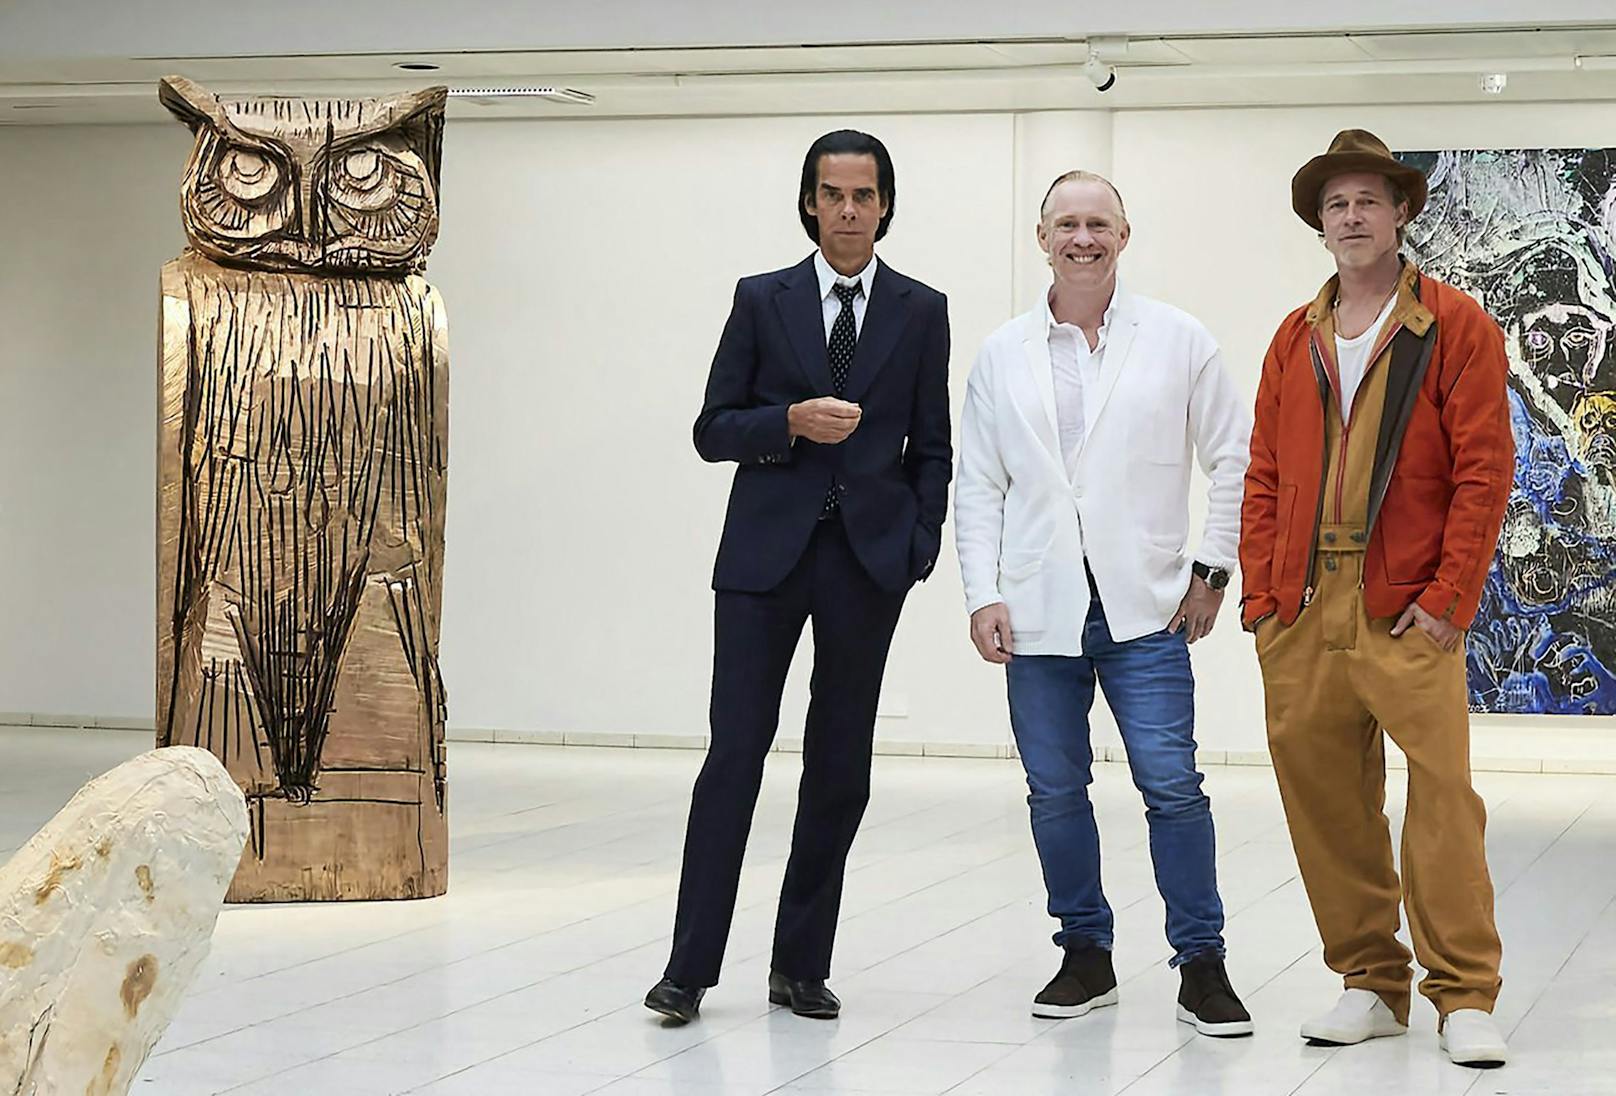 Der britische Künstler Thomas Houseago posiert mit dem US-Schauspieler Brad Pitt und dem australischen Musiker Nick Cave, vor der Eröffnung der Ausstellung "Thomas Houseago".